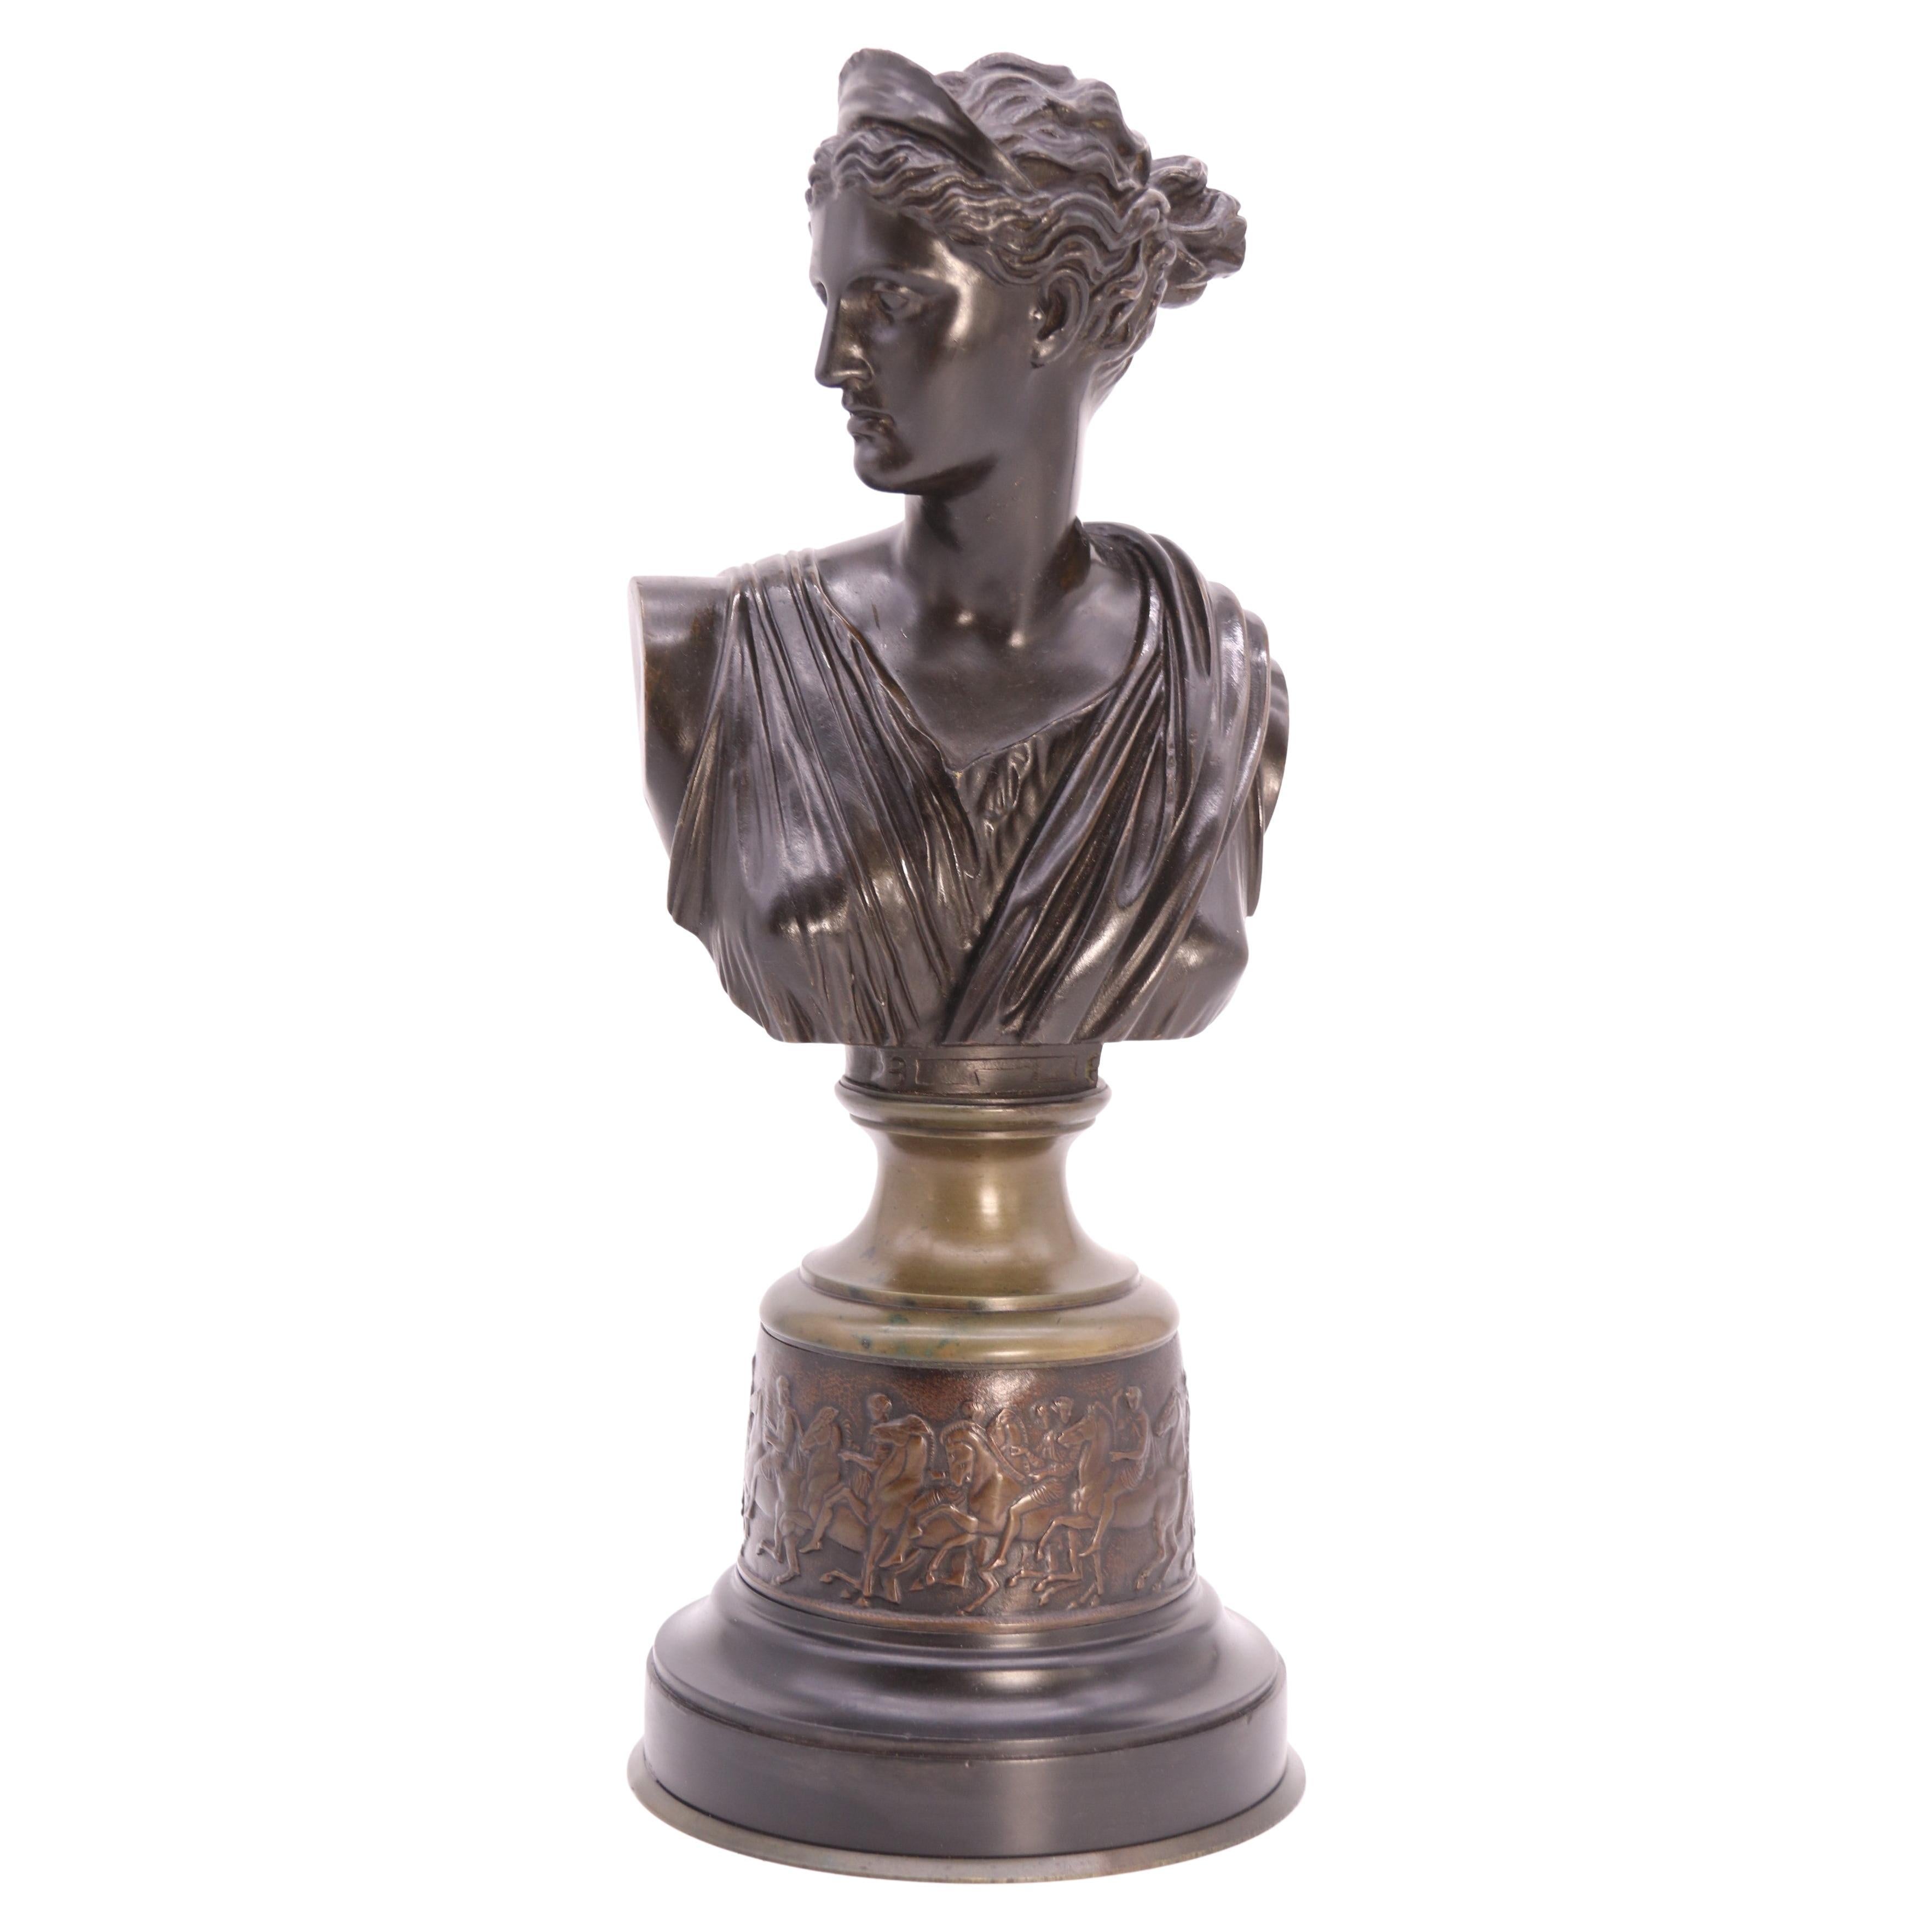 Buste en bronze du XIXe siècle représentant la déesse grecque Diane chasseresse, vers 1860